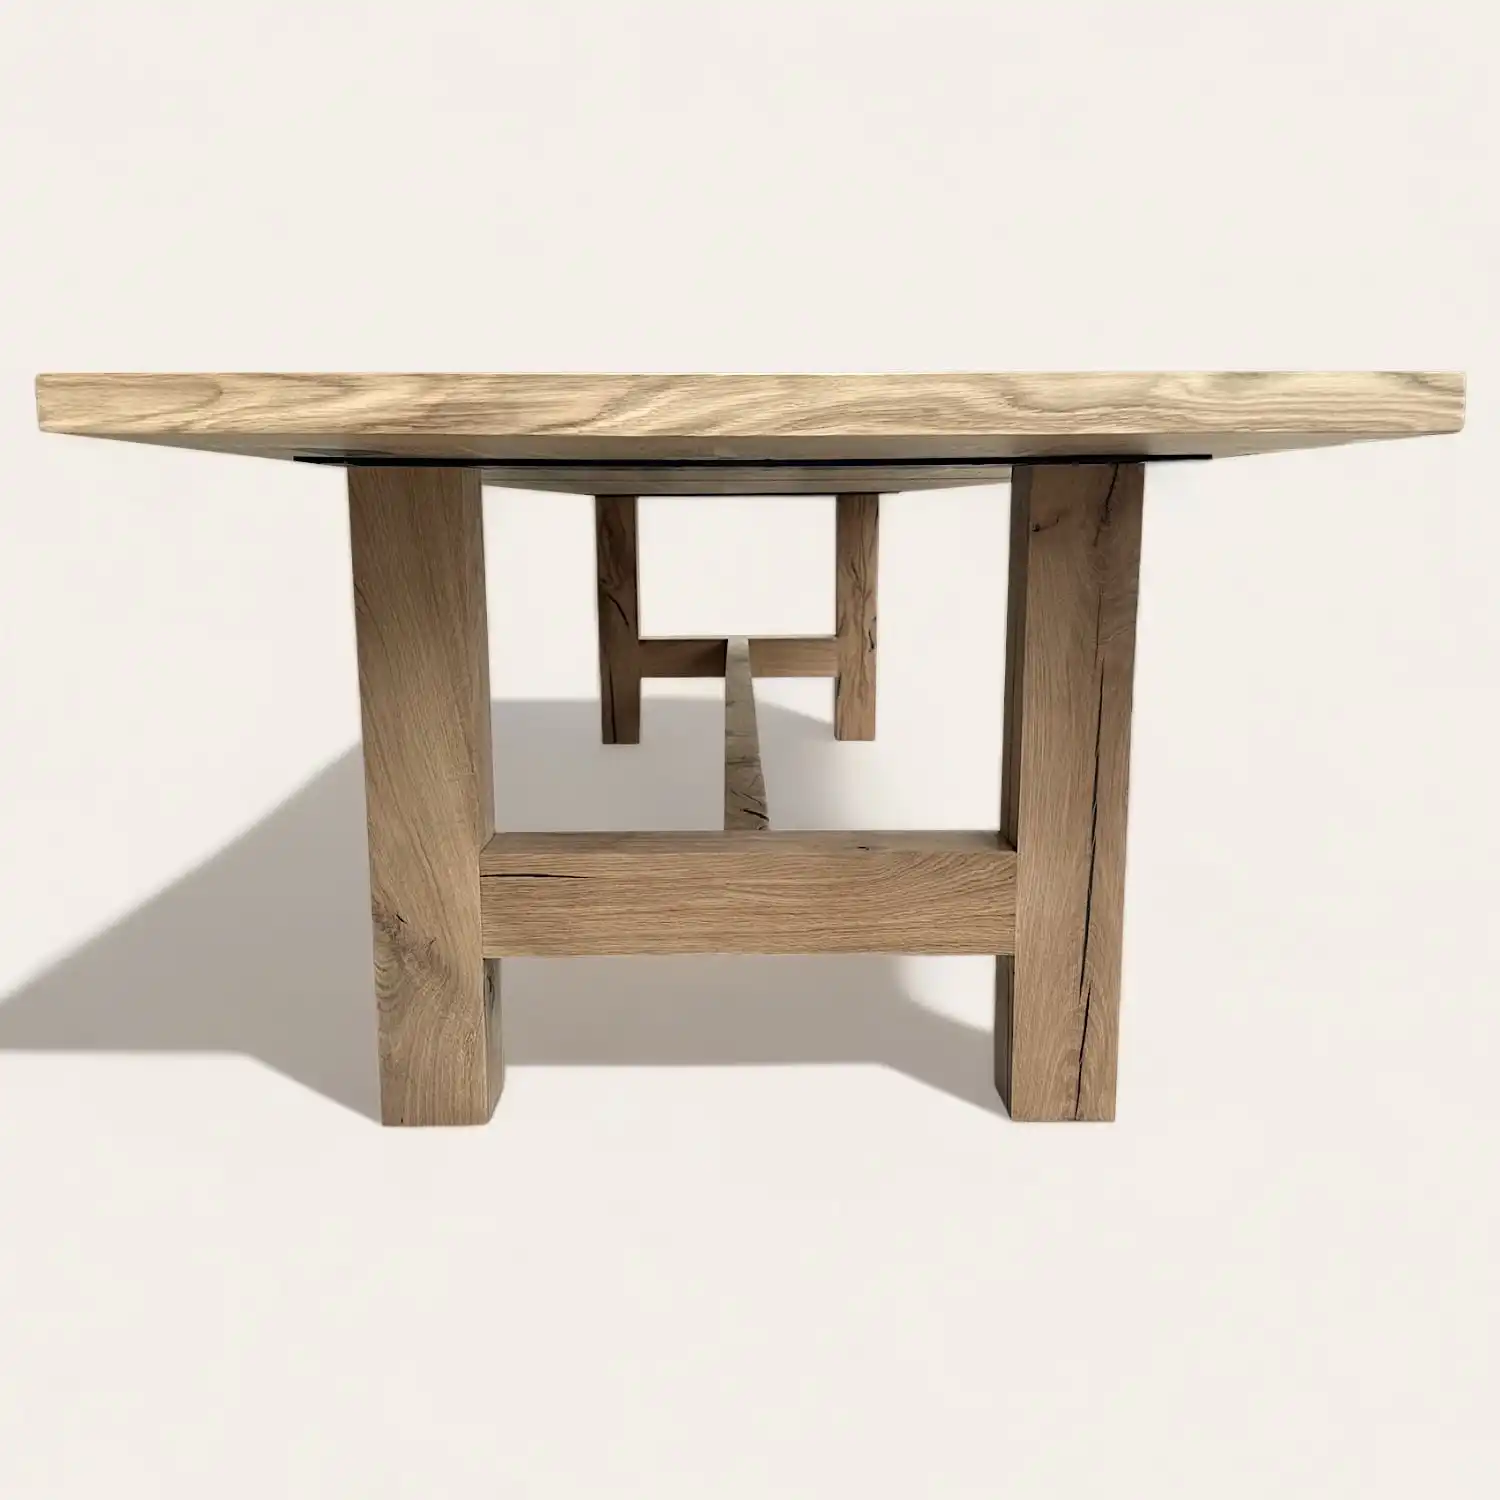  Une table à manger en bois rustique avec un plateau en bois massif. 